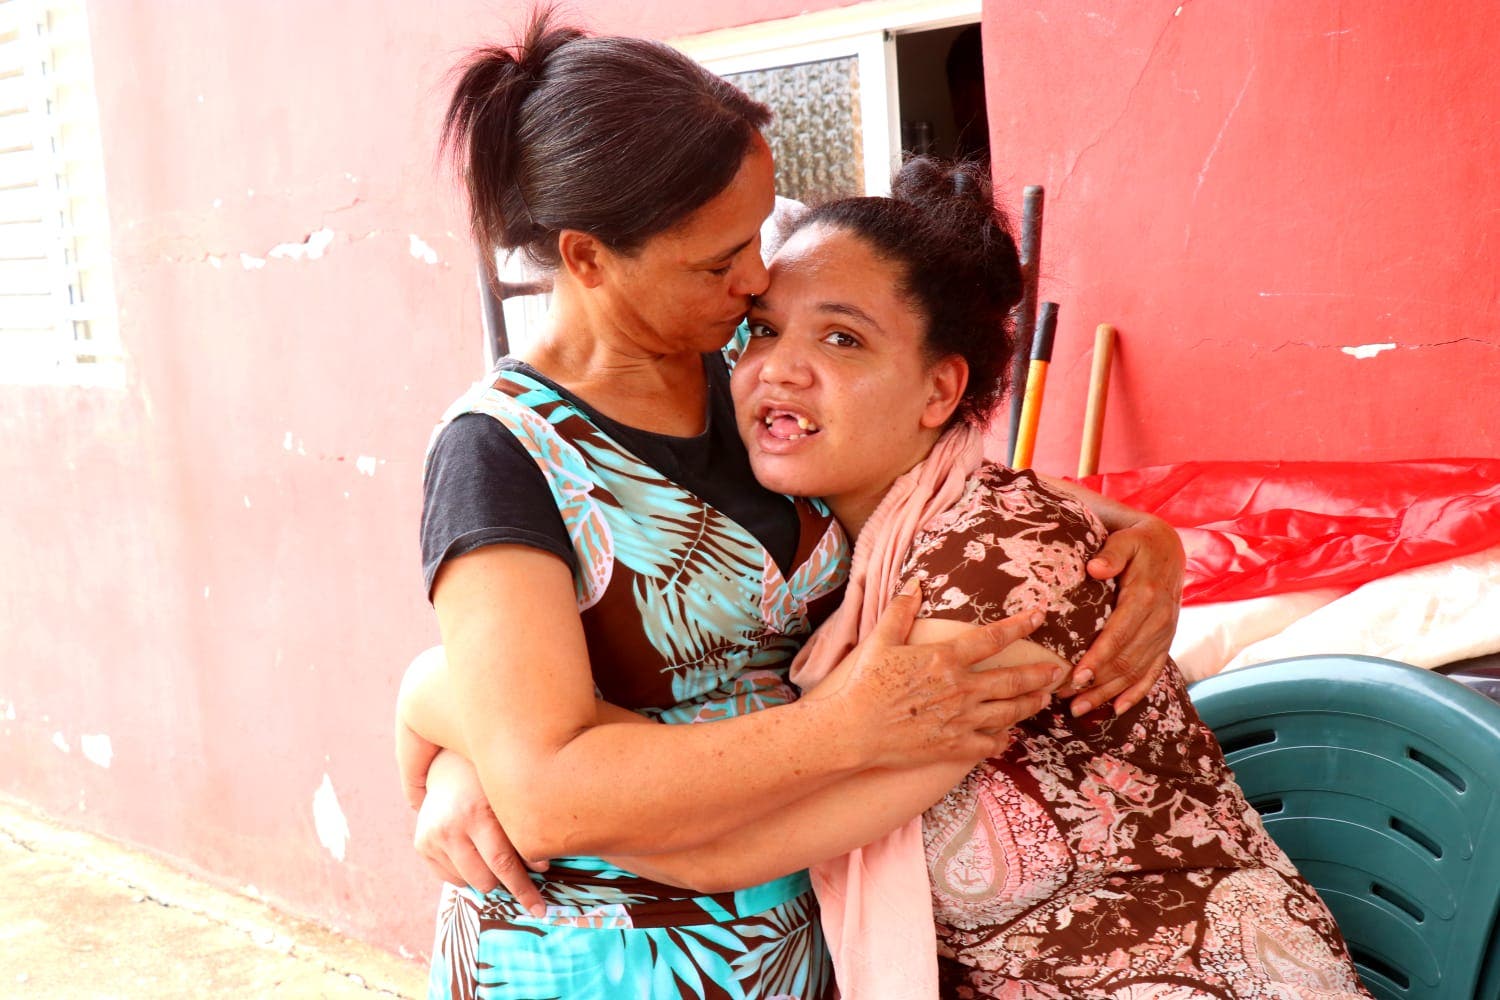 Madre pide ayuda a primera dama para realizarle callosotomía a hija con epilepsia refractaria